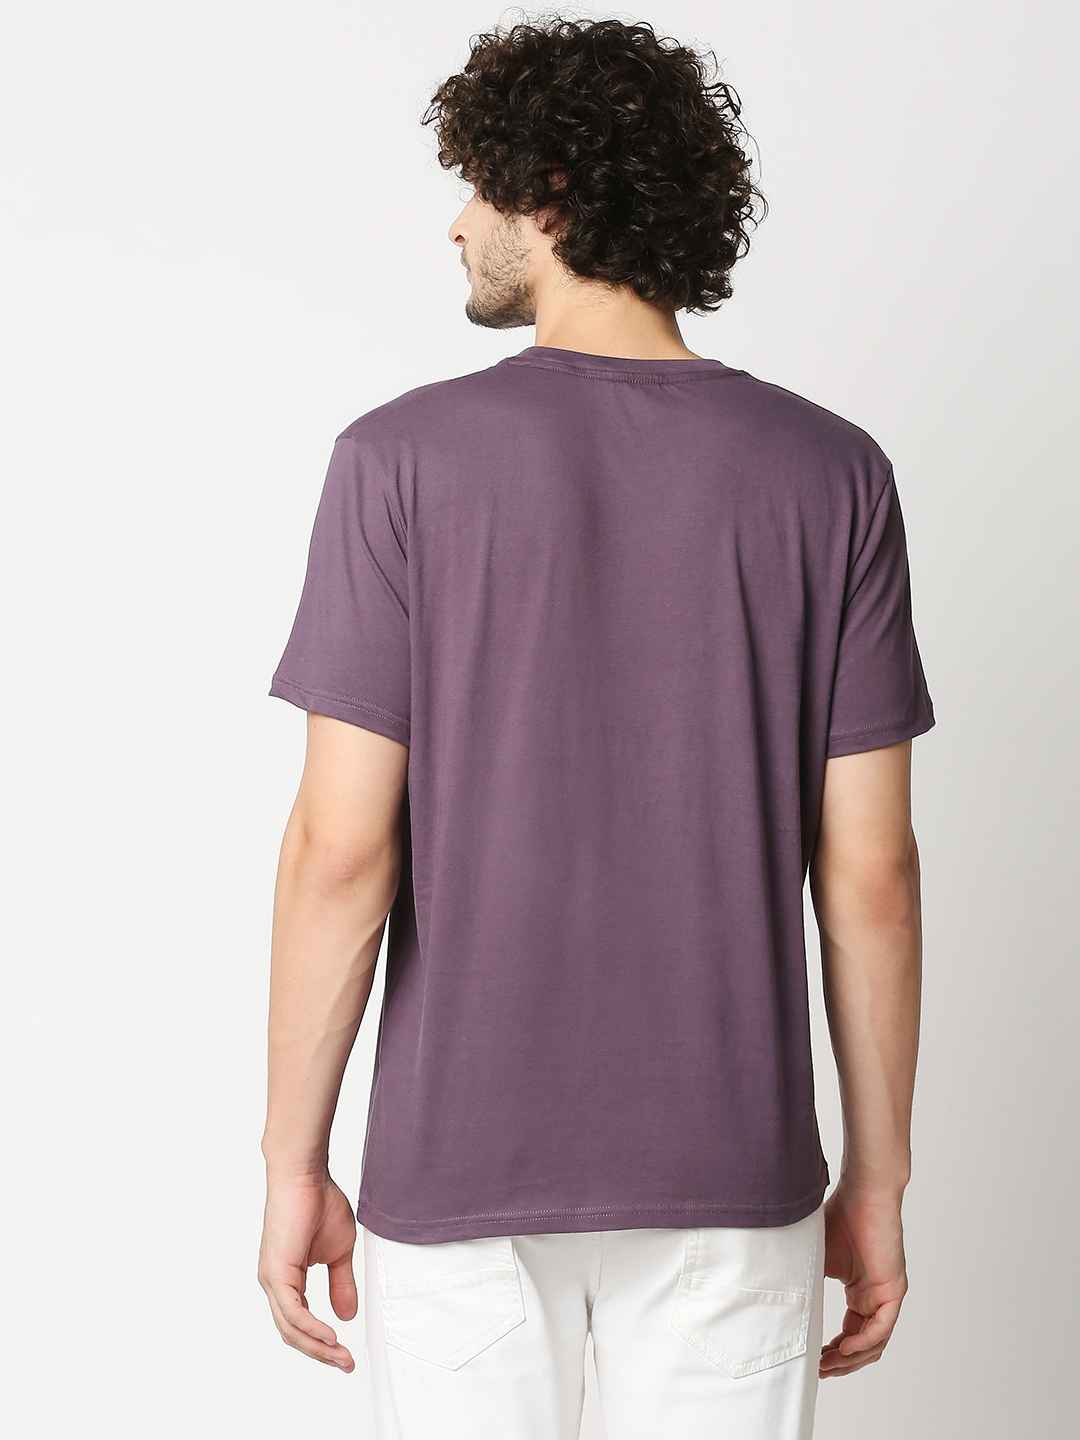 Buy Men's Comfort fit Lavender Chest print T-shirt